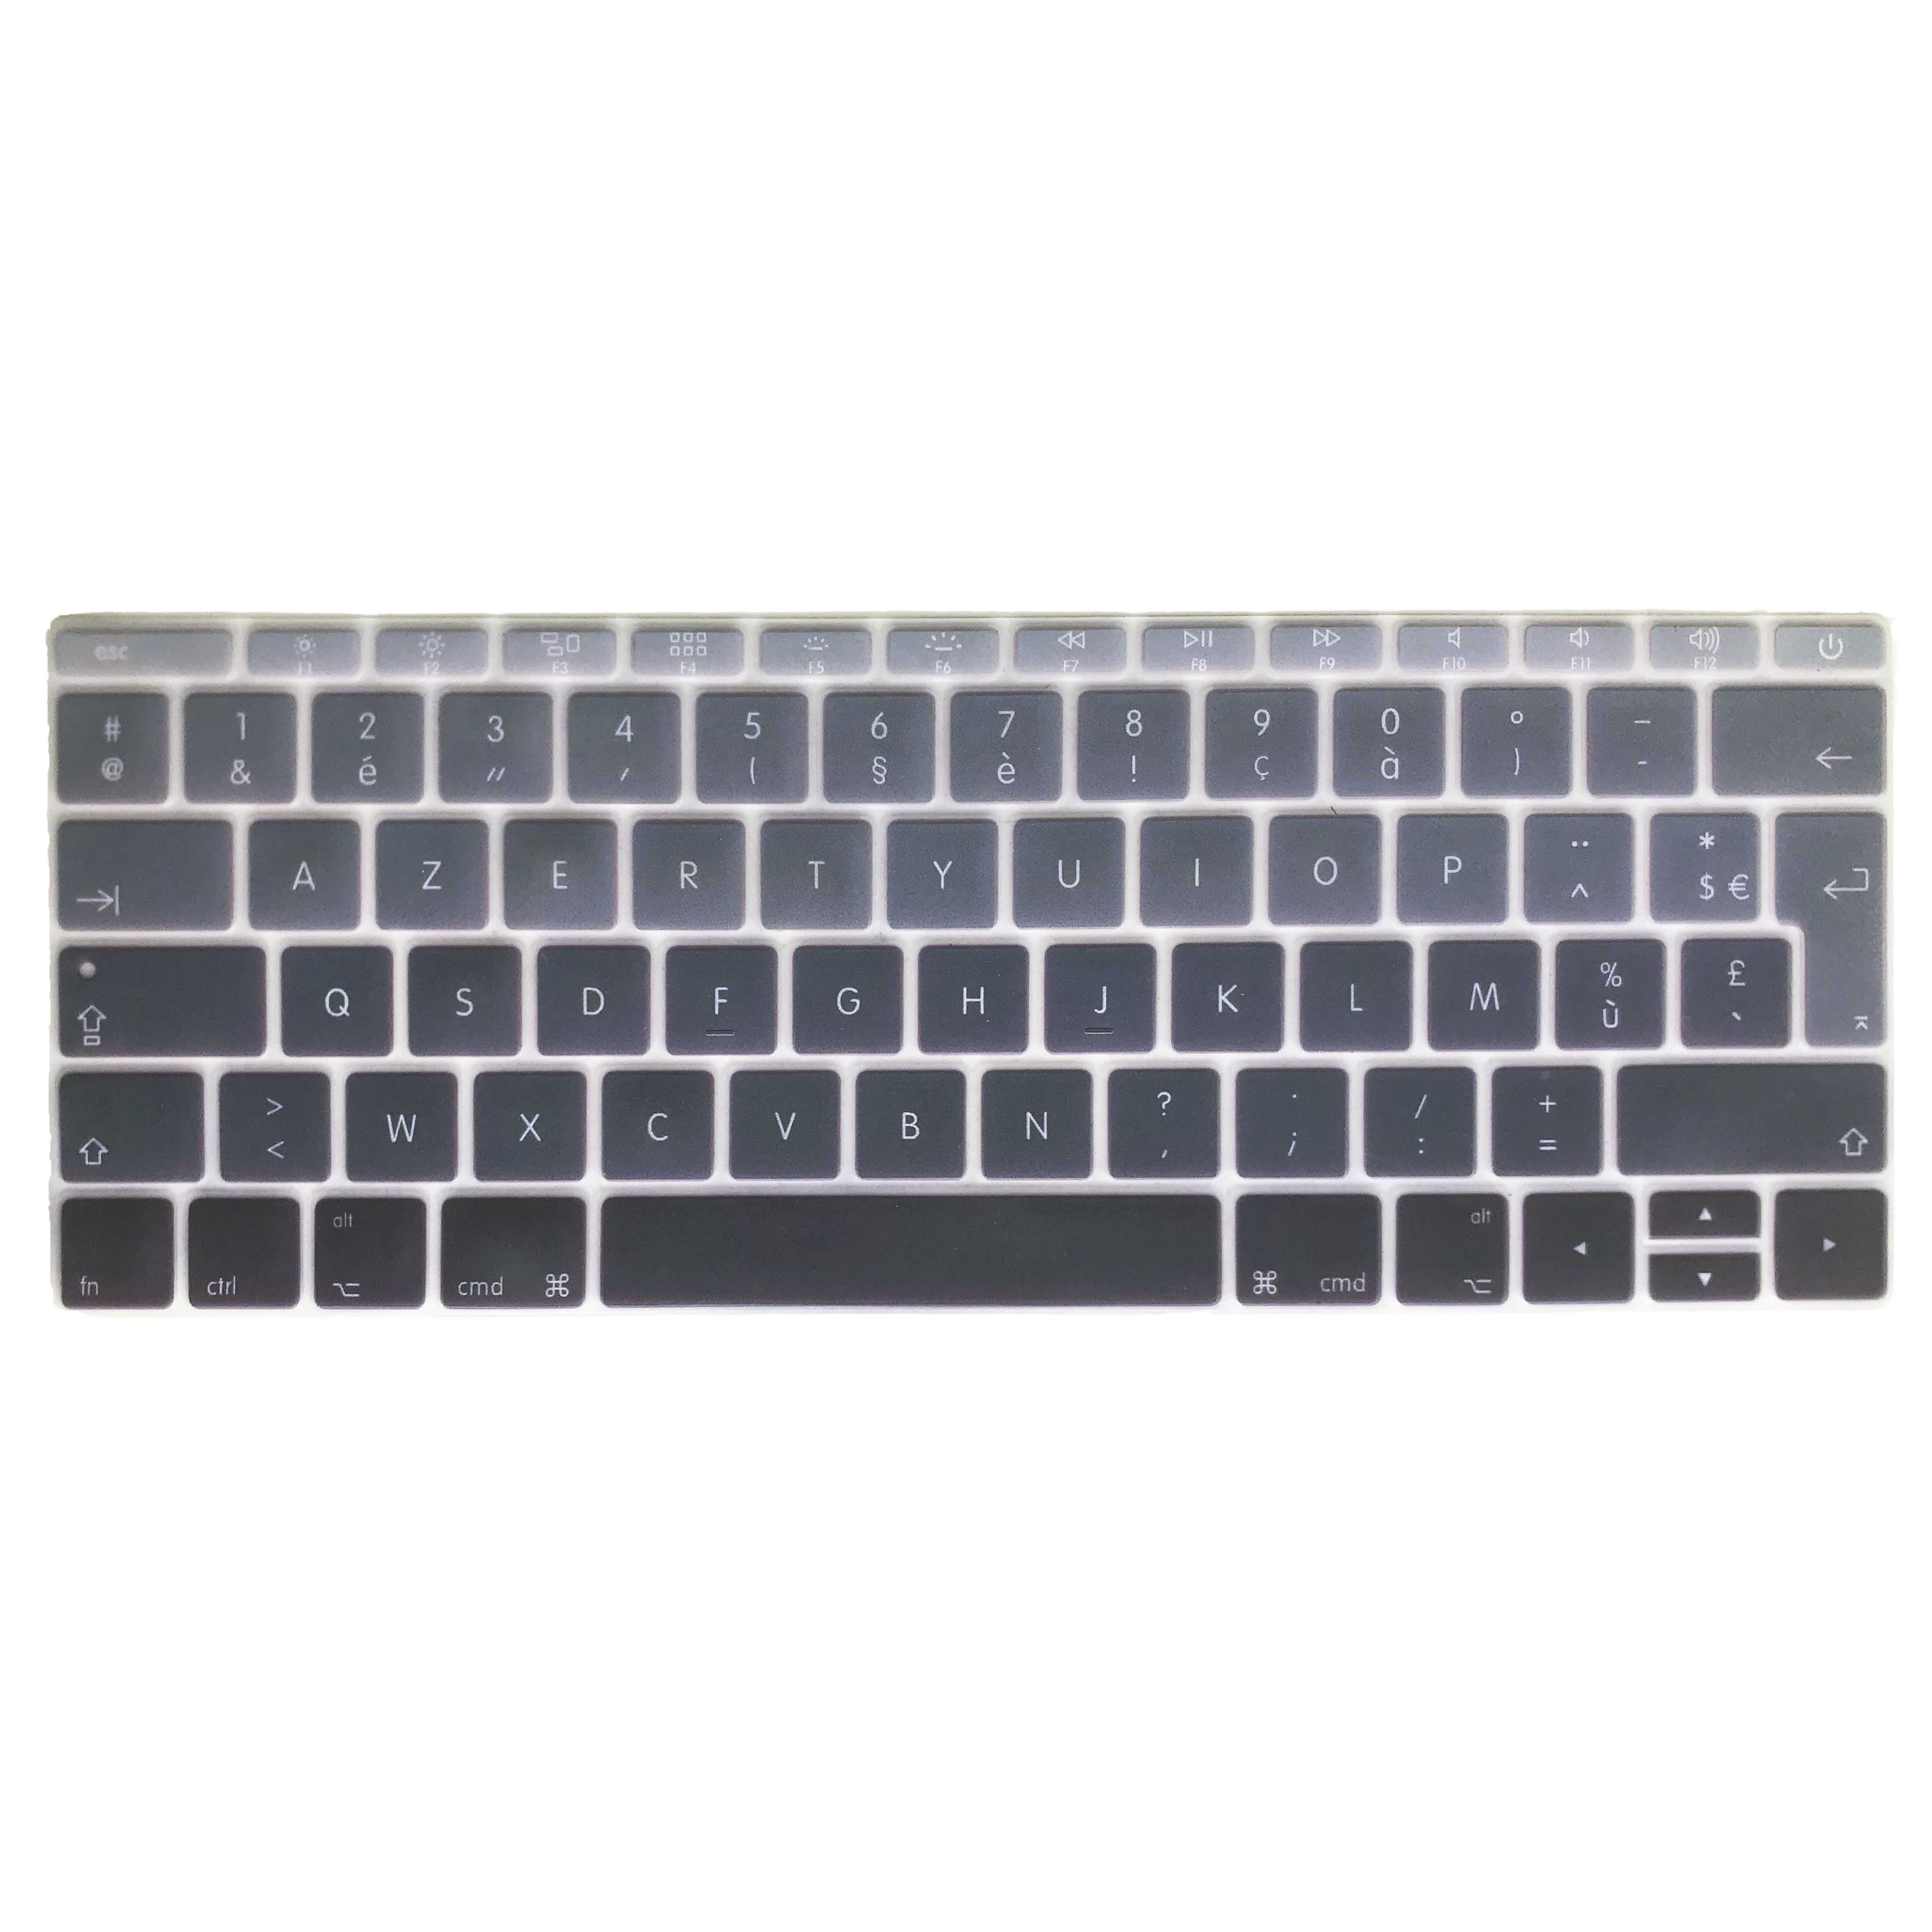 Coque MacBook - Marbre Carrara Or – Tibisig